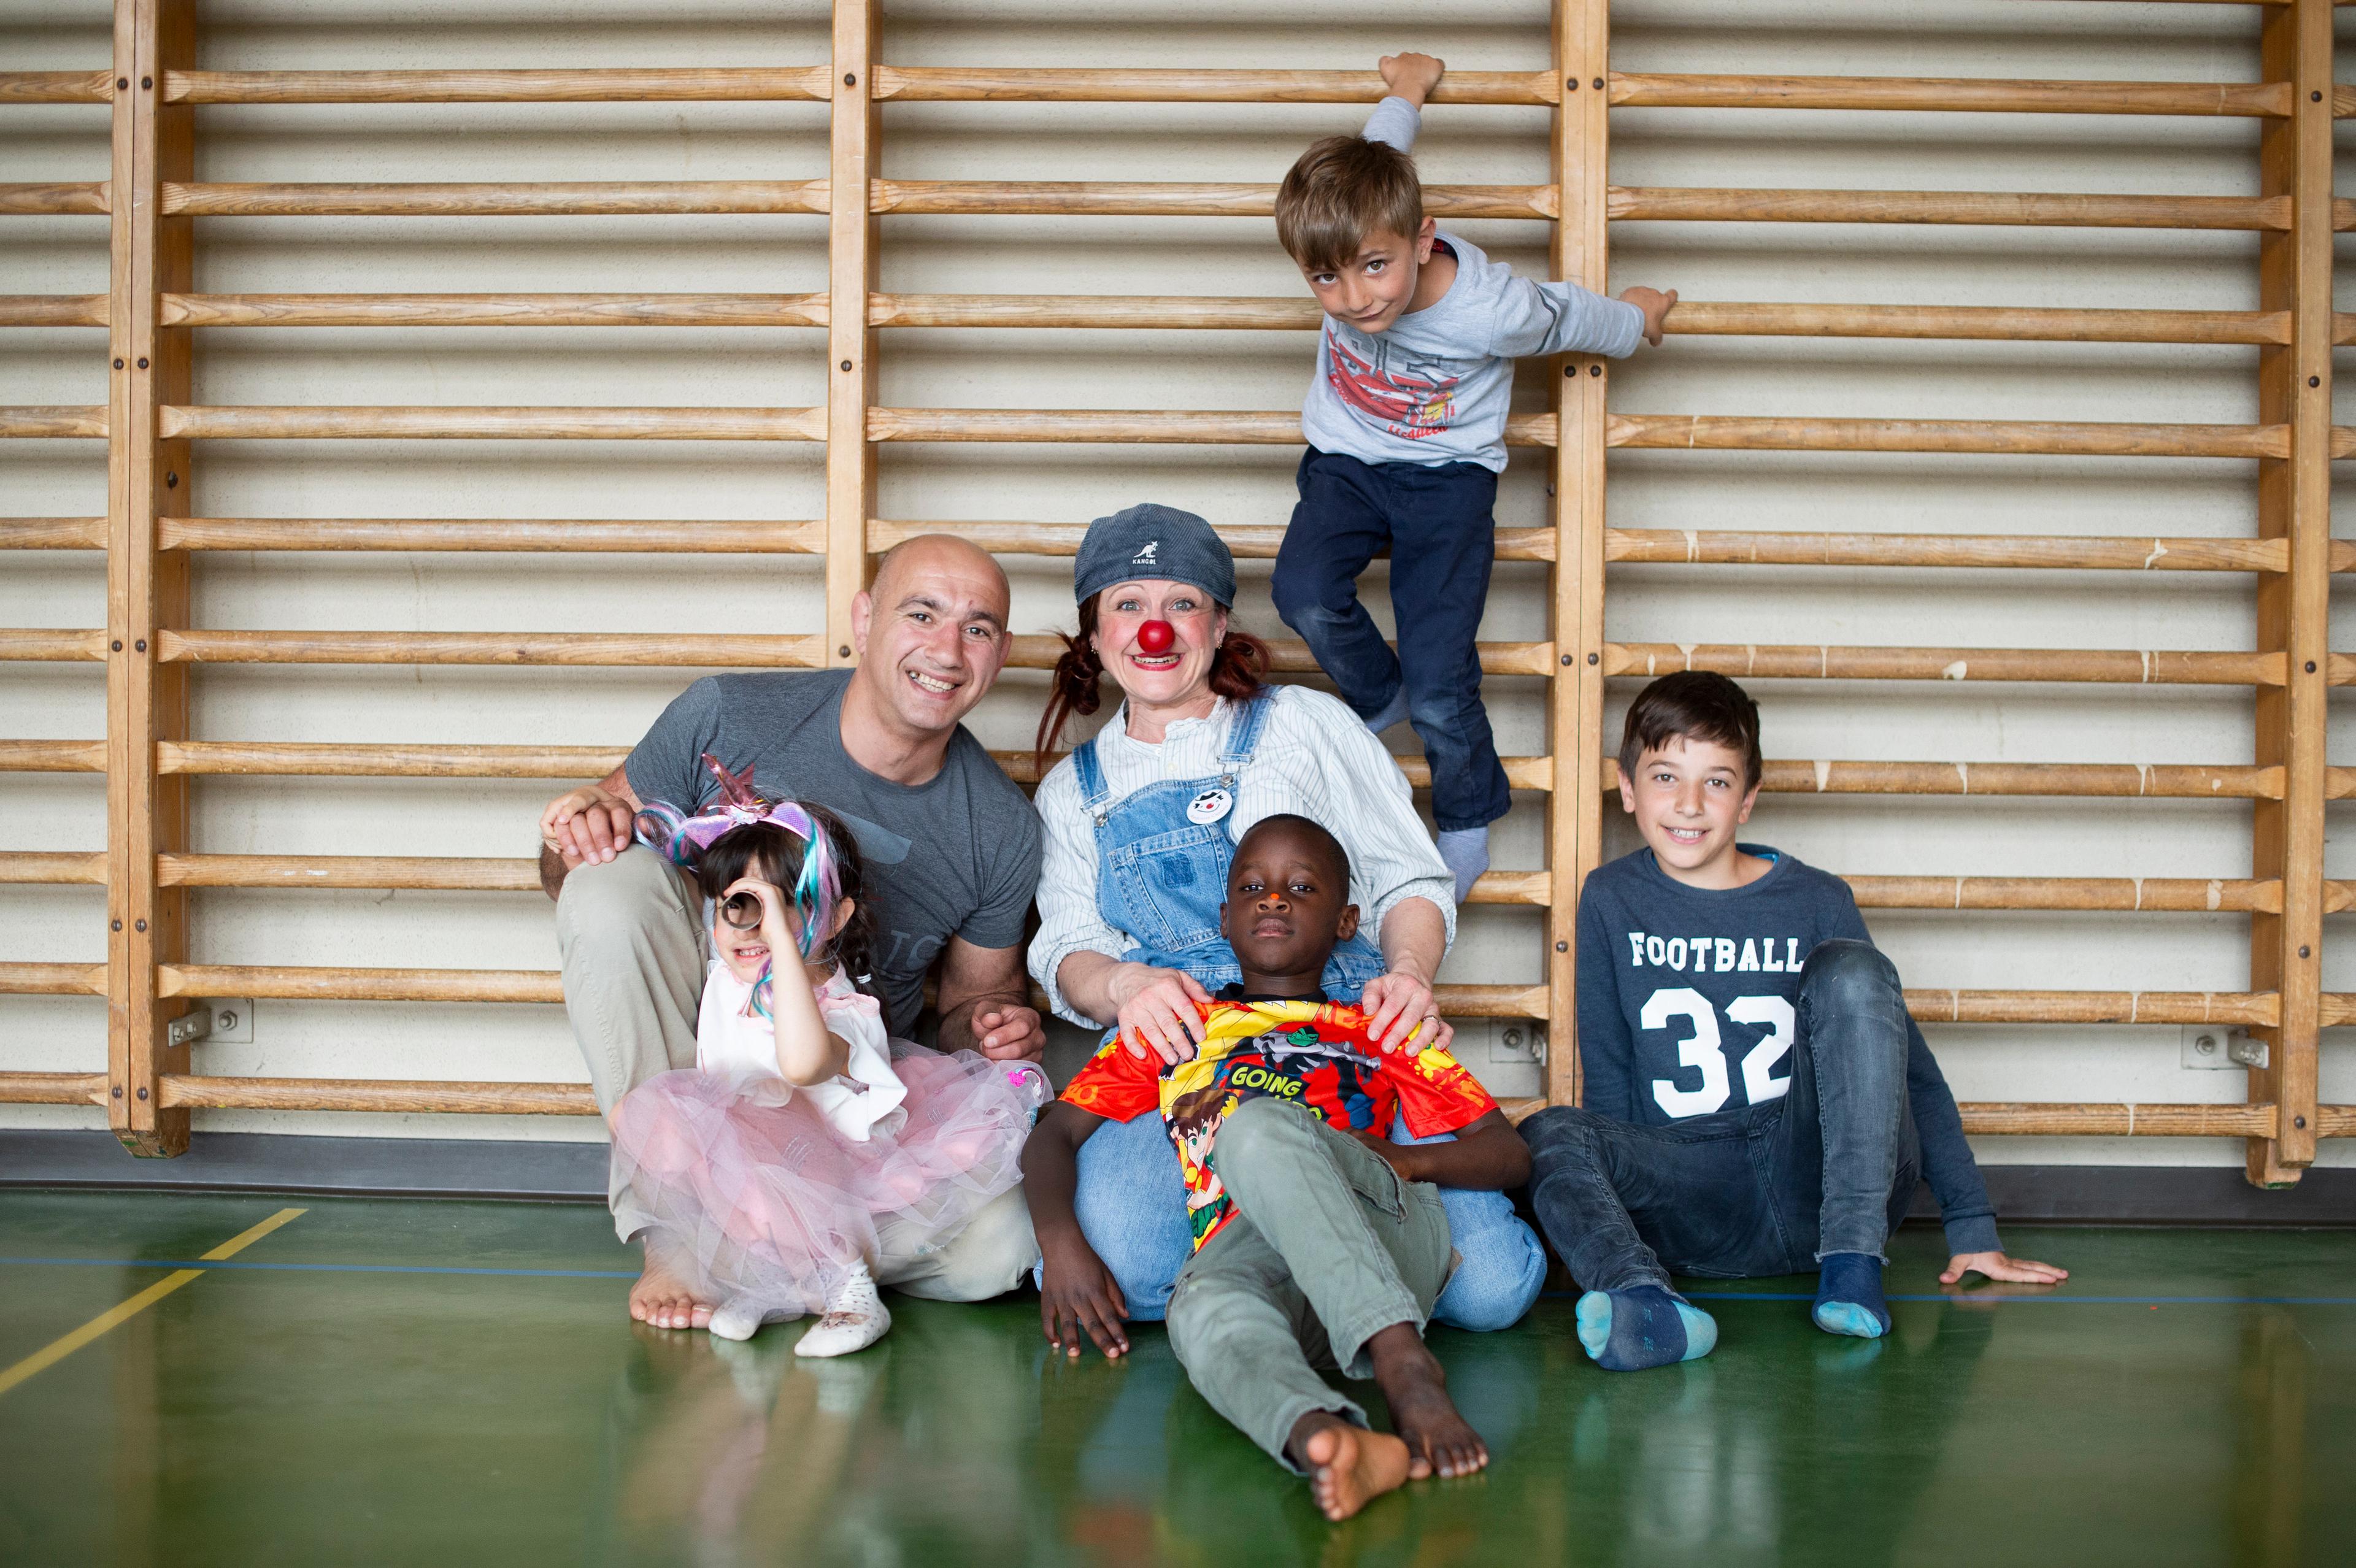 Marianne, quatre ans, son père, la clown Zilibii et deux garçons sont assis par terre dans un gymnase.  Un garçon s'accroche à l'espalier au-dessus. Tout le monde rit.